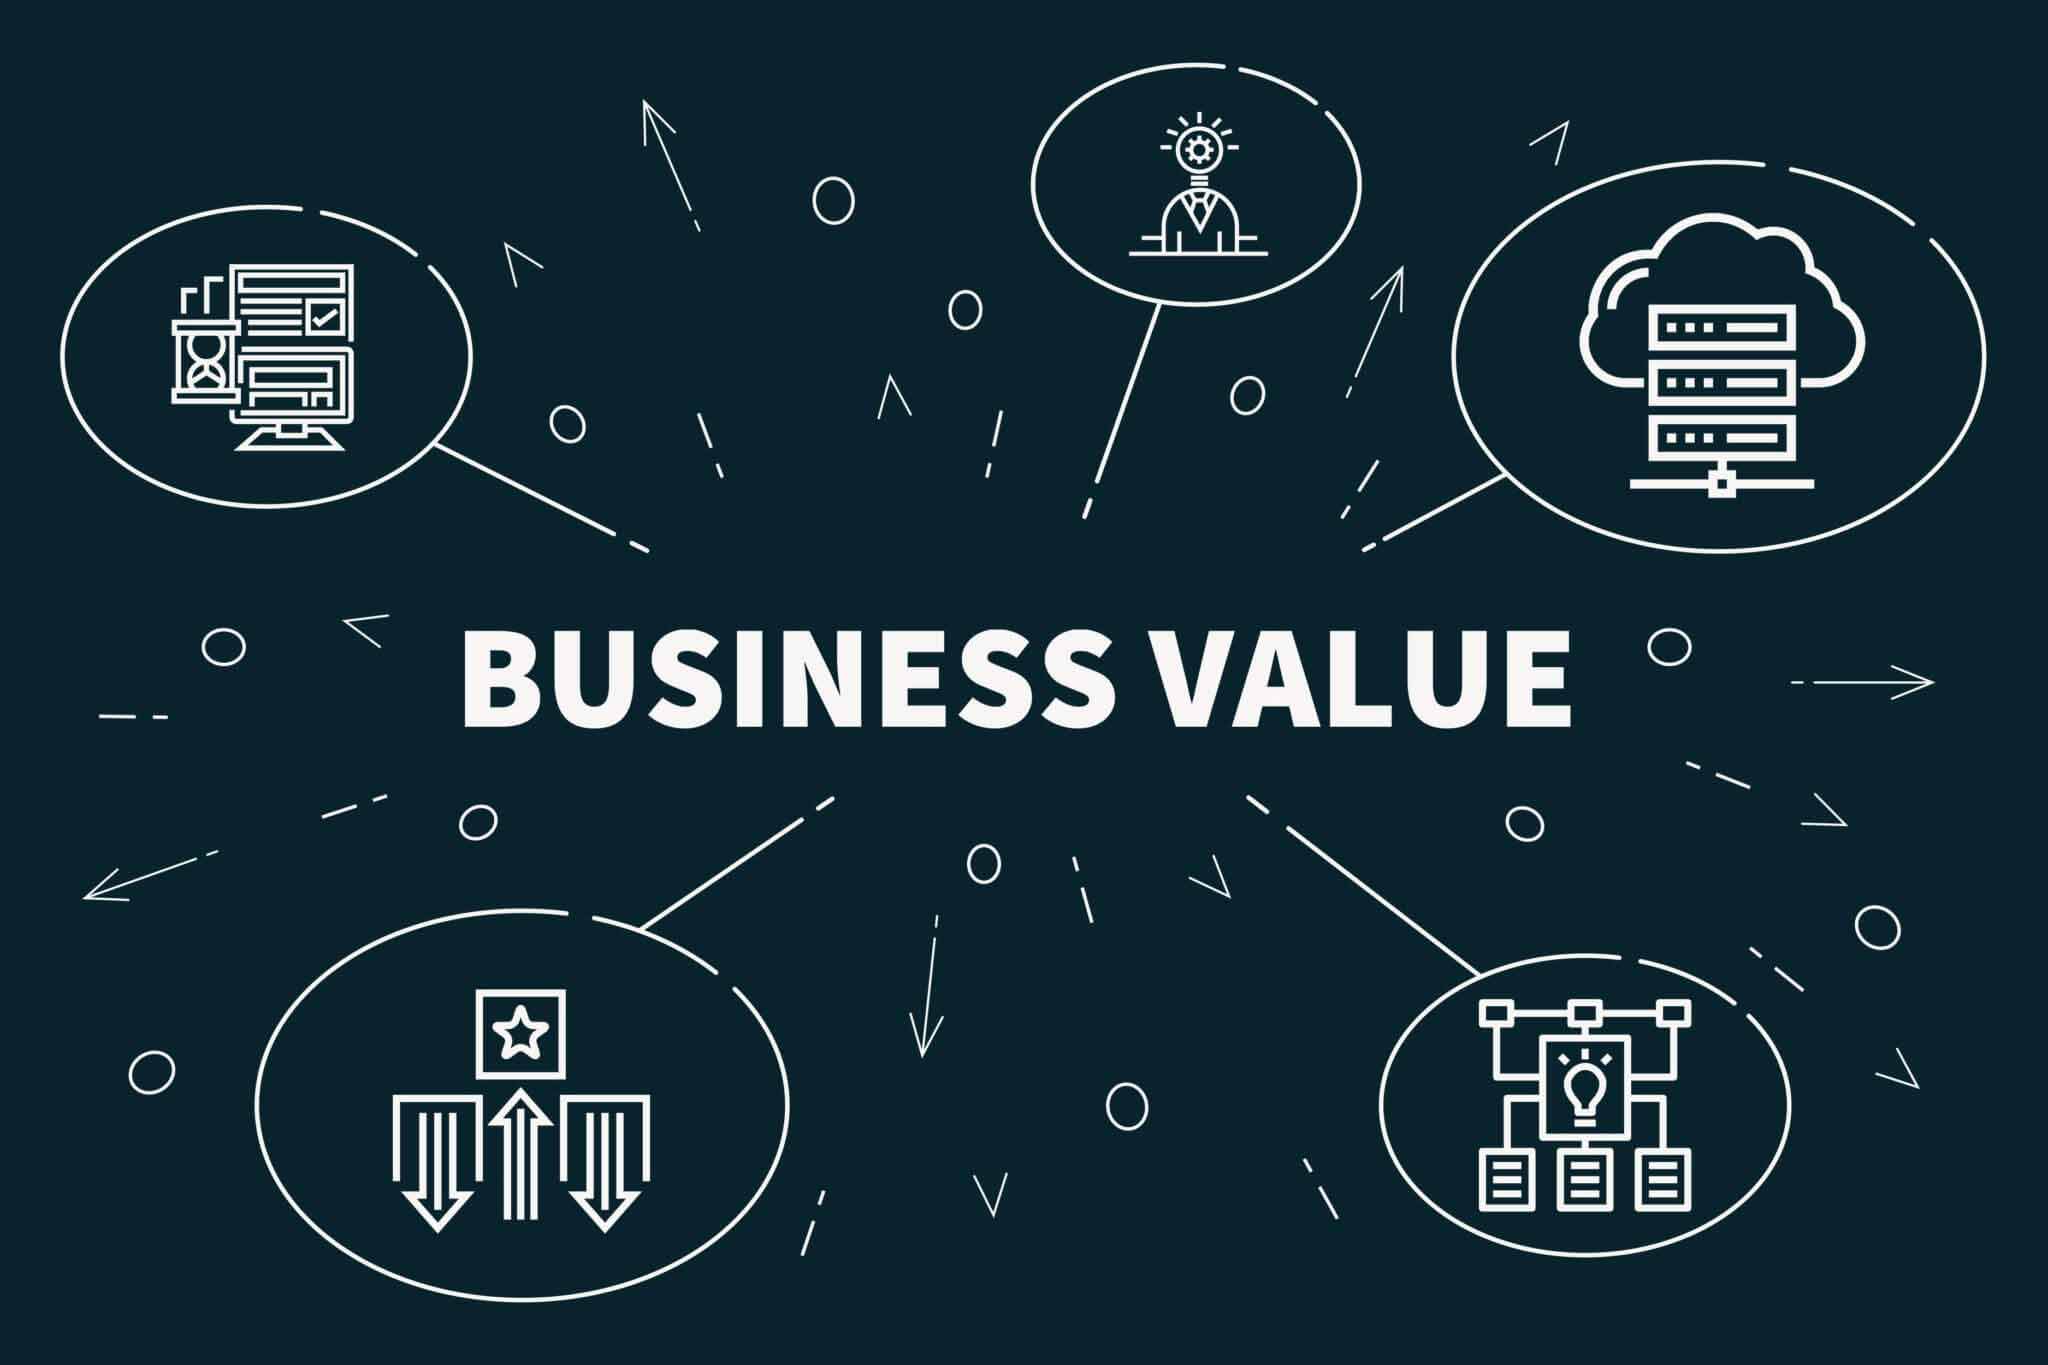 Sandler Enterprise Selling: Focus on Business Value